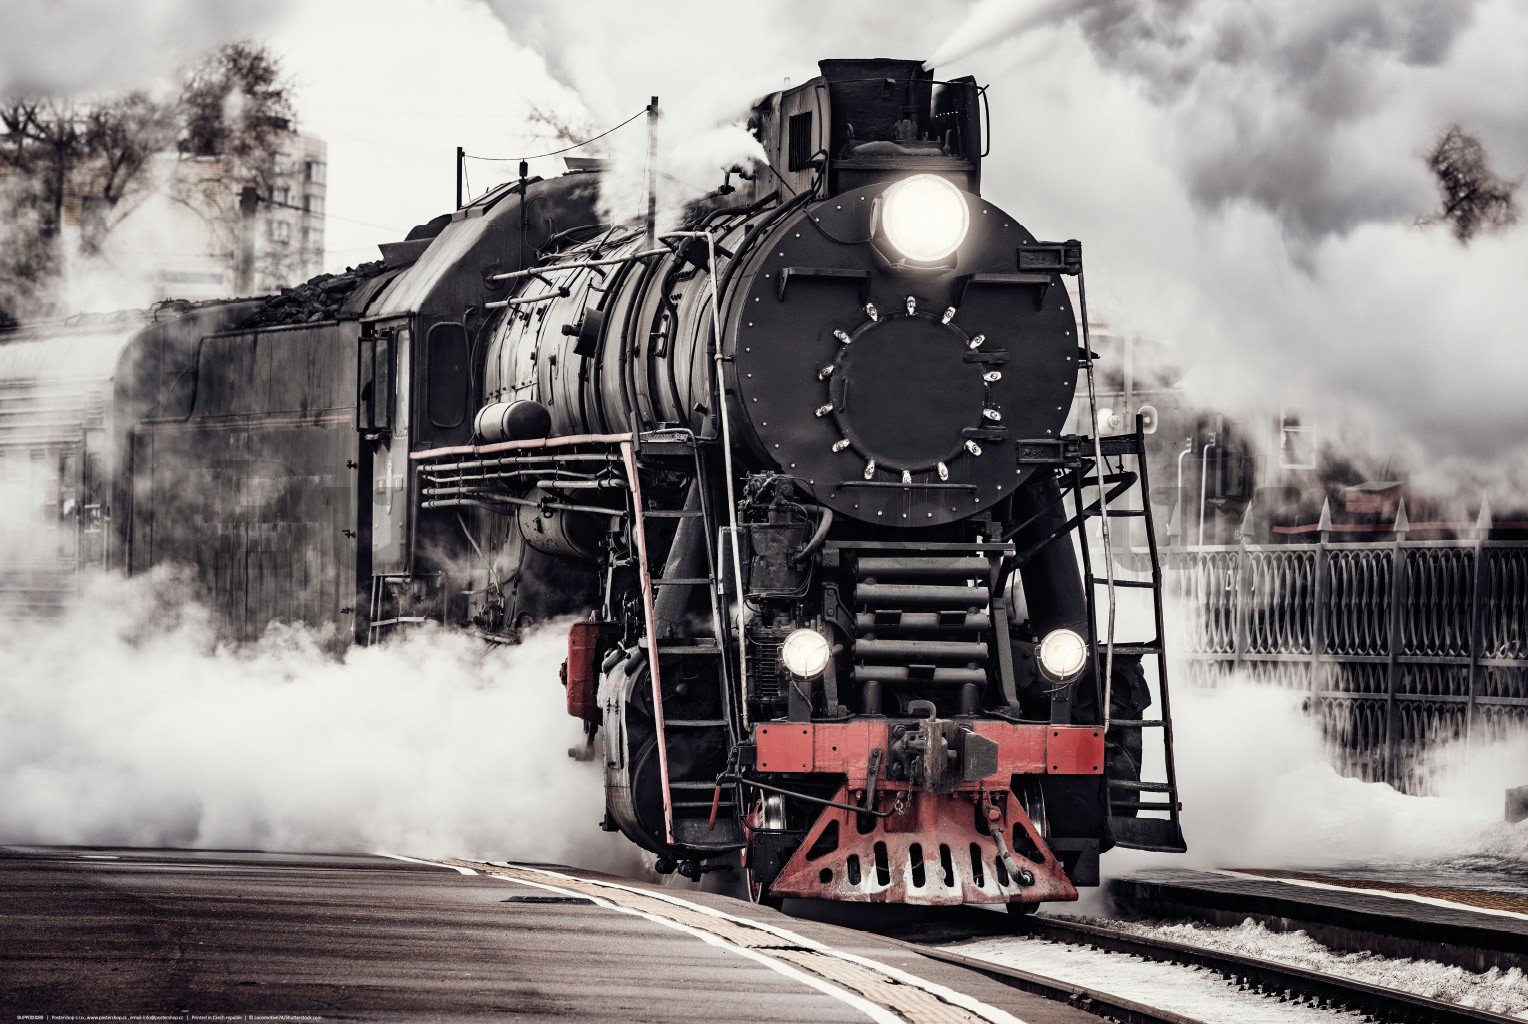 Poster: Steam locomotive